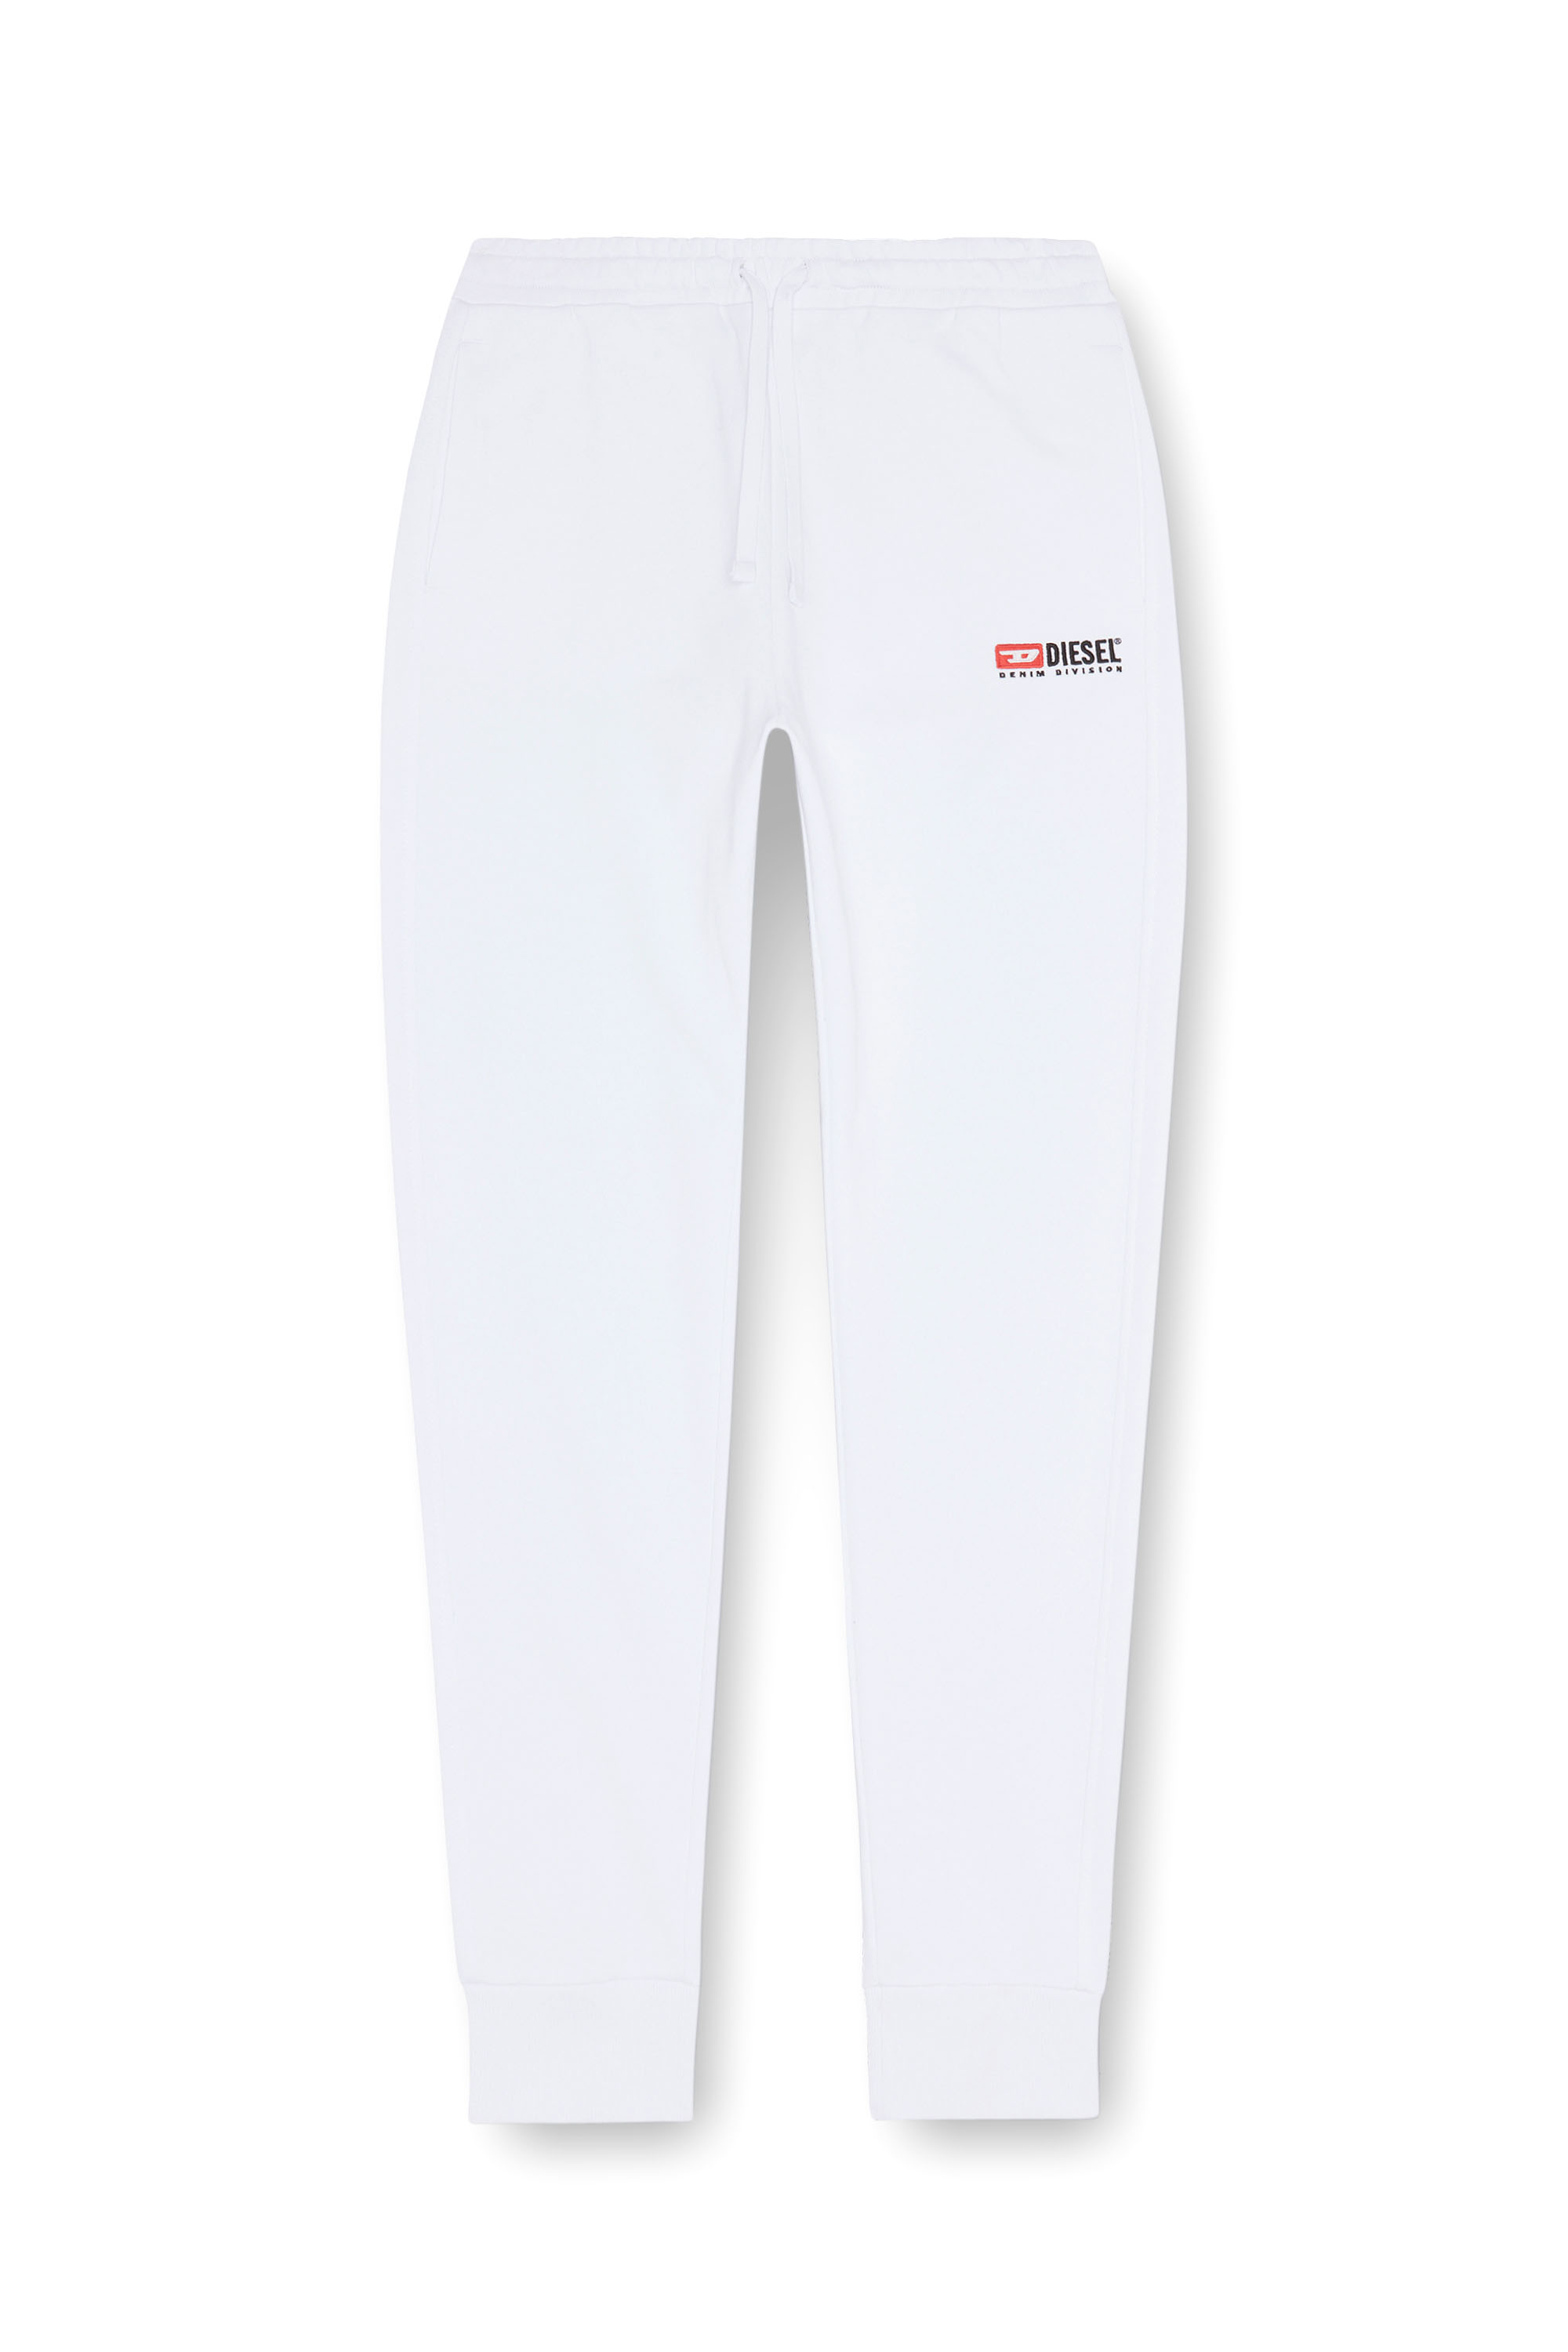 Diesel - P-TARY-DIV, Homme Pantalon de survêtement avec logo brodé in Blanc - Image 3